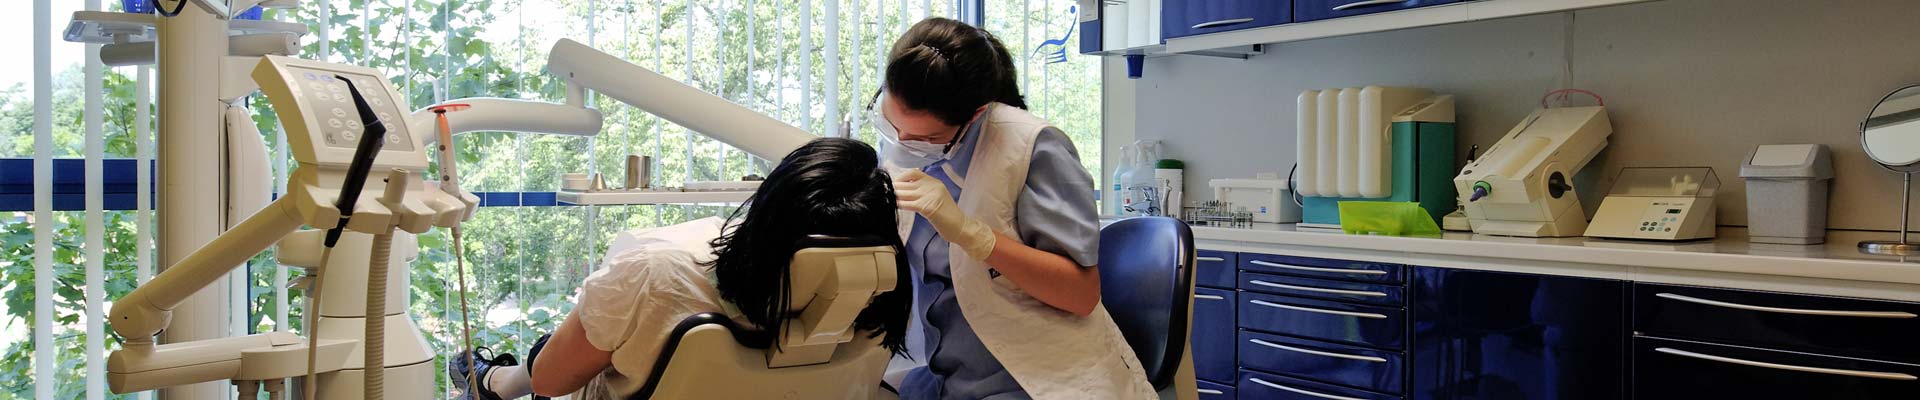 Zahnbehandlung und Zahnersatz bei Kreativ Dental